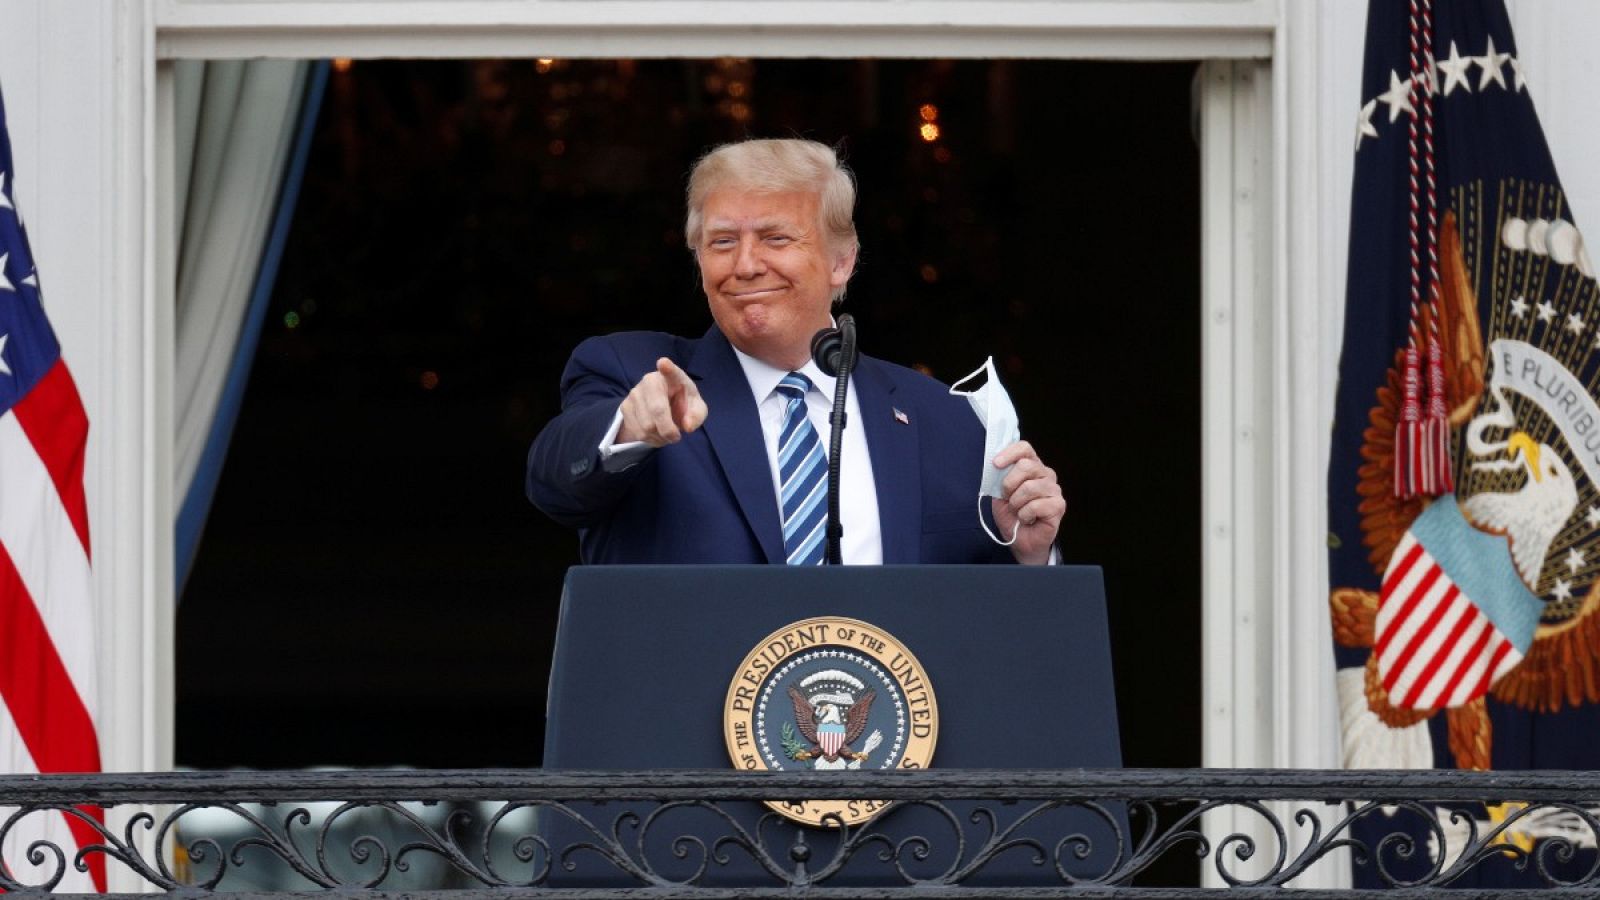 Trump reaparece en la Casa Blanca tras su ingreso: "Estoy bien"